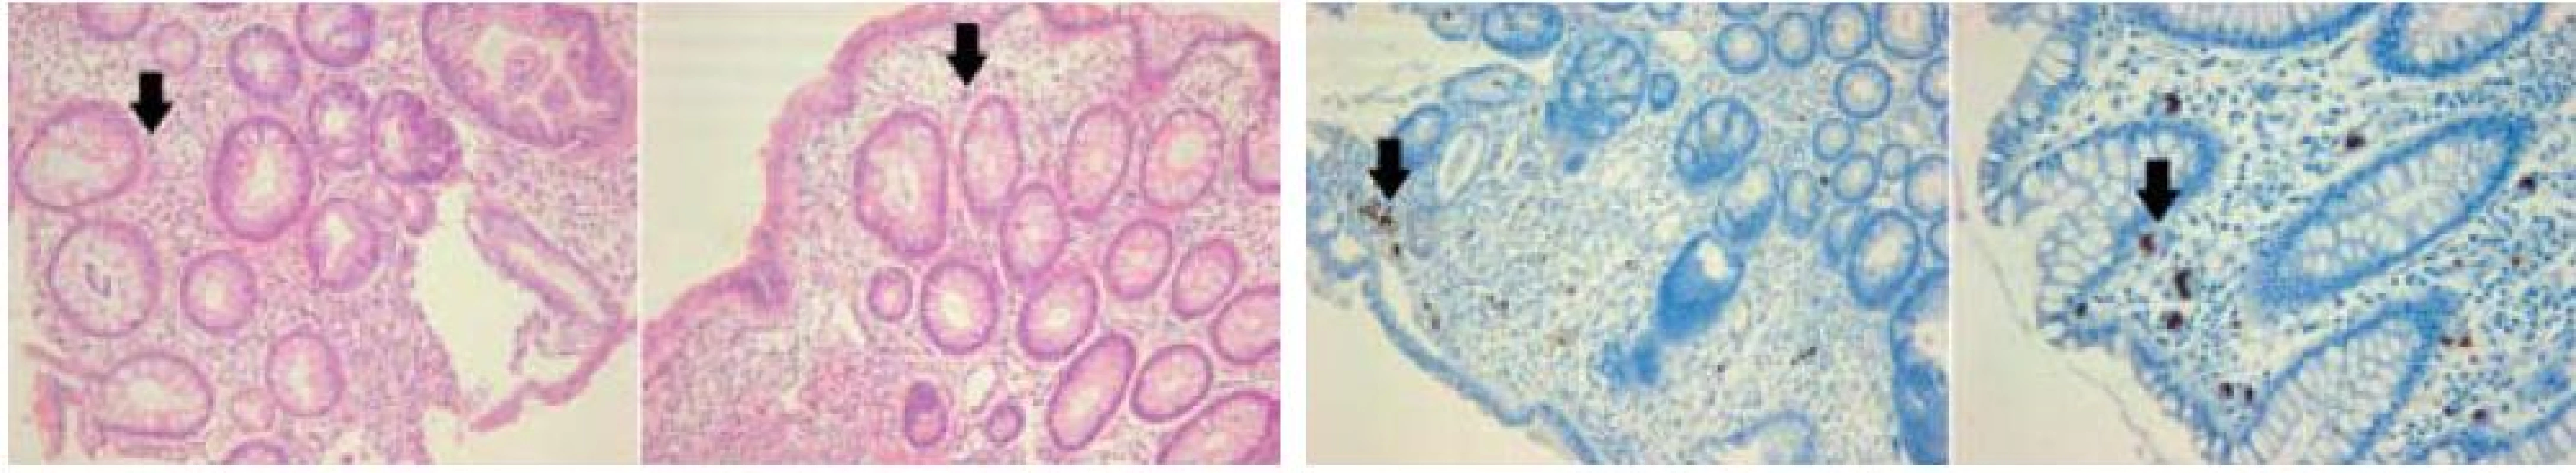 Histologický obraz CMV kolitidy: vlevo – v barvení hematoxylin-eosinem, vpravo – imunohistochemický průkaz CMV (immediate early antigen CMV). Šipky označují typické „megalocyty“ s inkluzemi.
Fig. 1. Histological depiction of CMV colitis: left – coloured haematoxylin-eosin, right – immunohistochemical CMV mark (immediate early antigen CMV). Arrows indicate typical ‘megalocytes’ with inclusions.